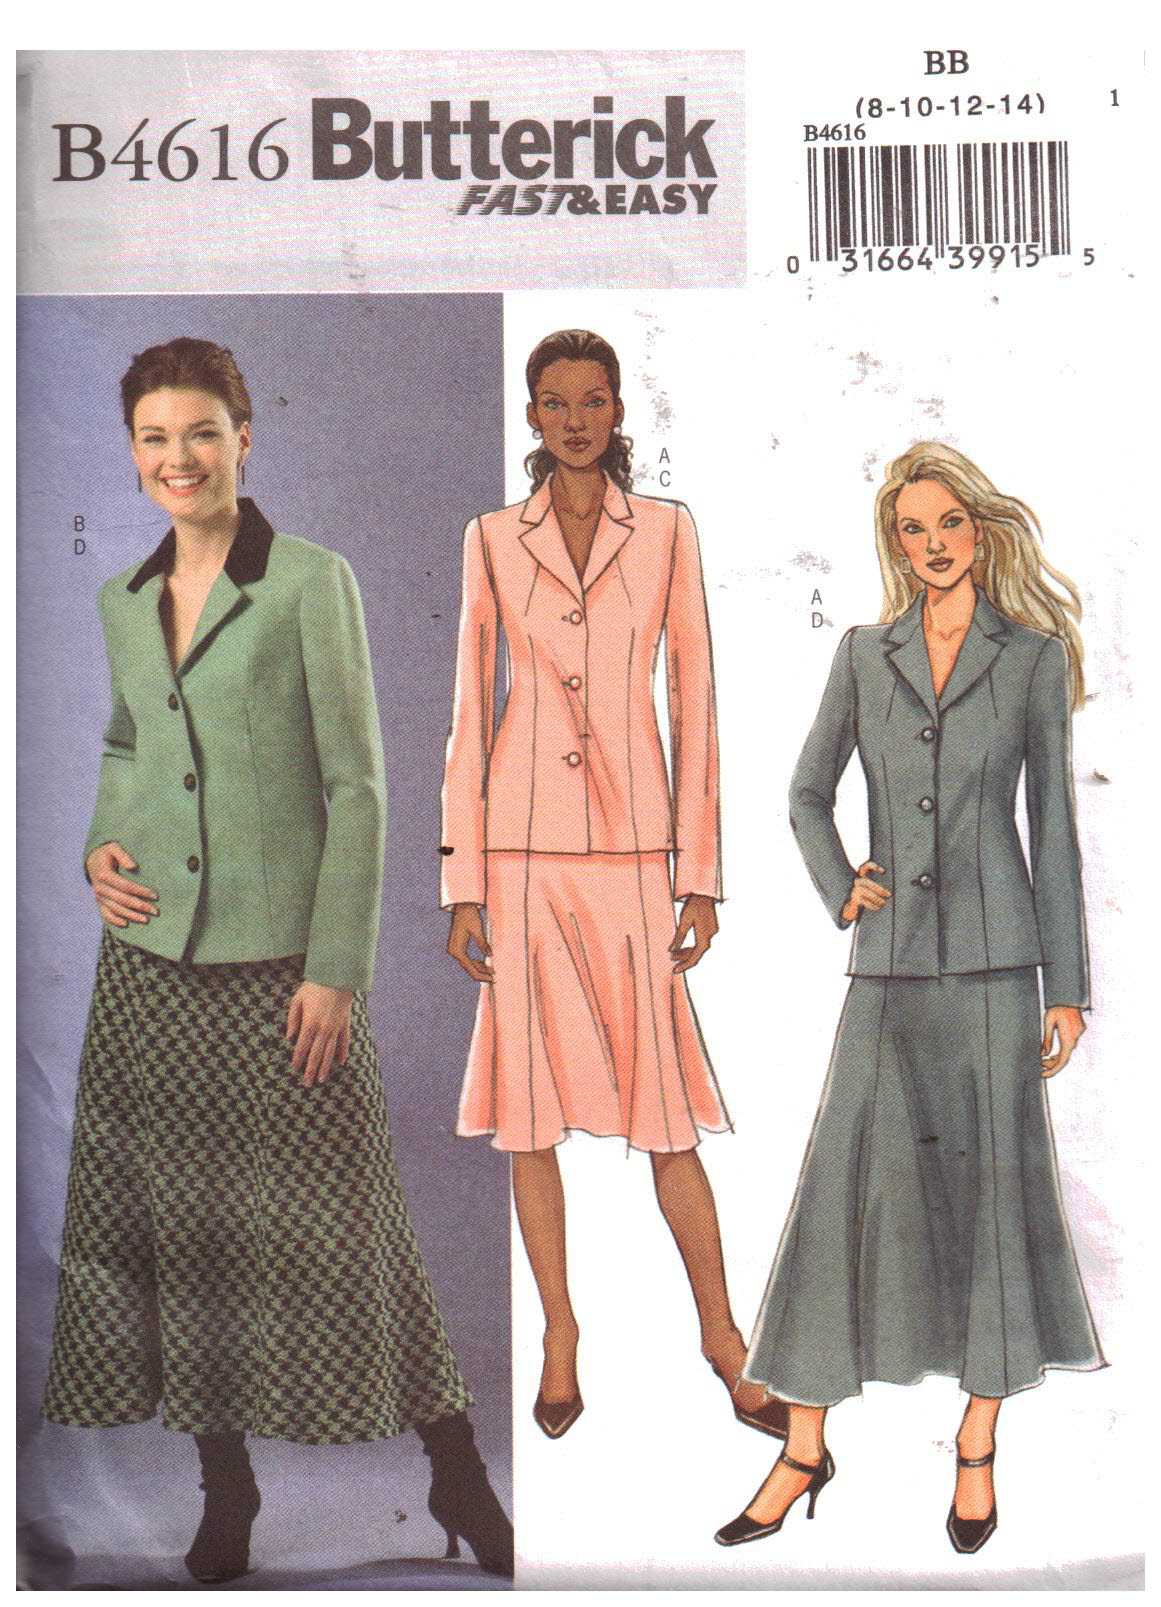 Butterick B4616 Jacket, Skirt Size: BB 8-10-12-14 Uncut Sewing Pattern